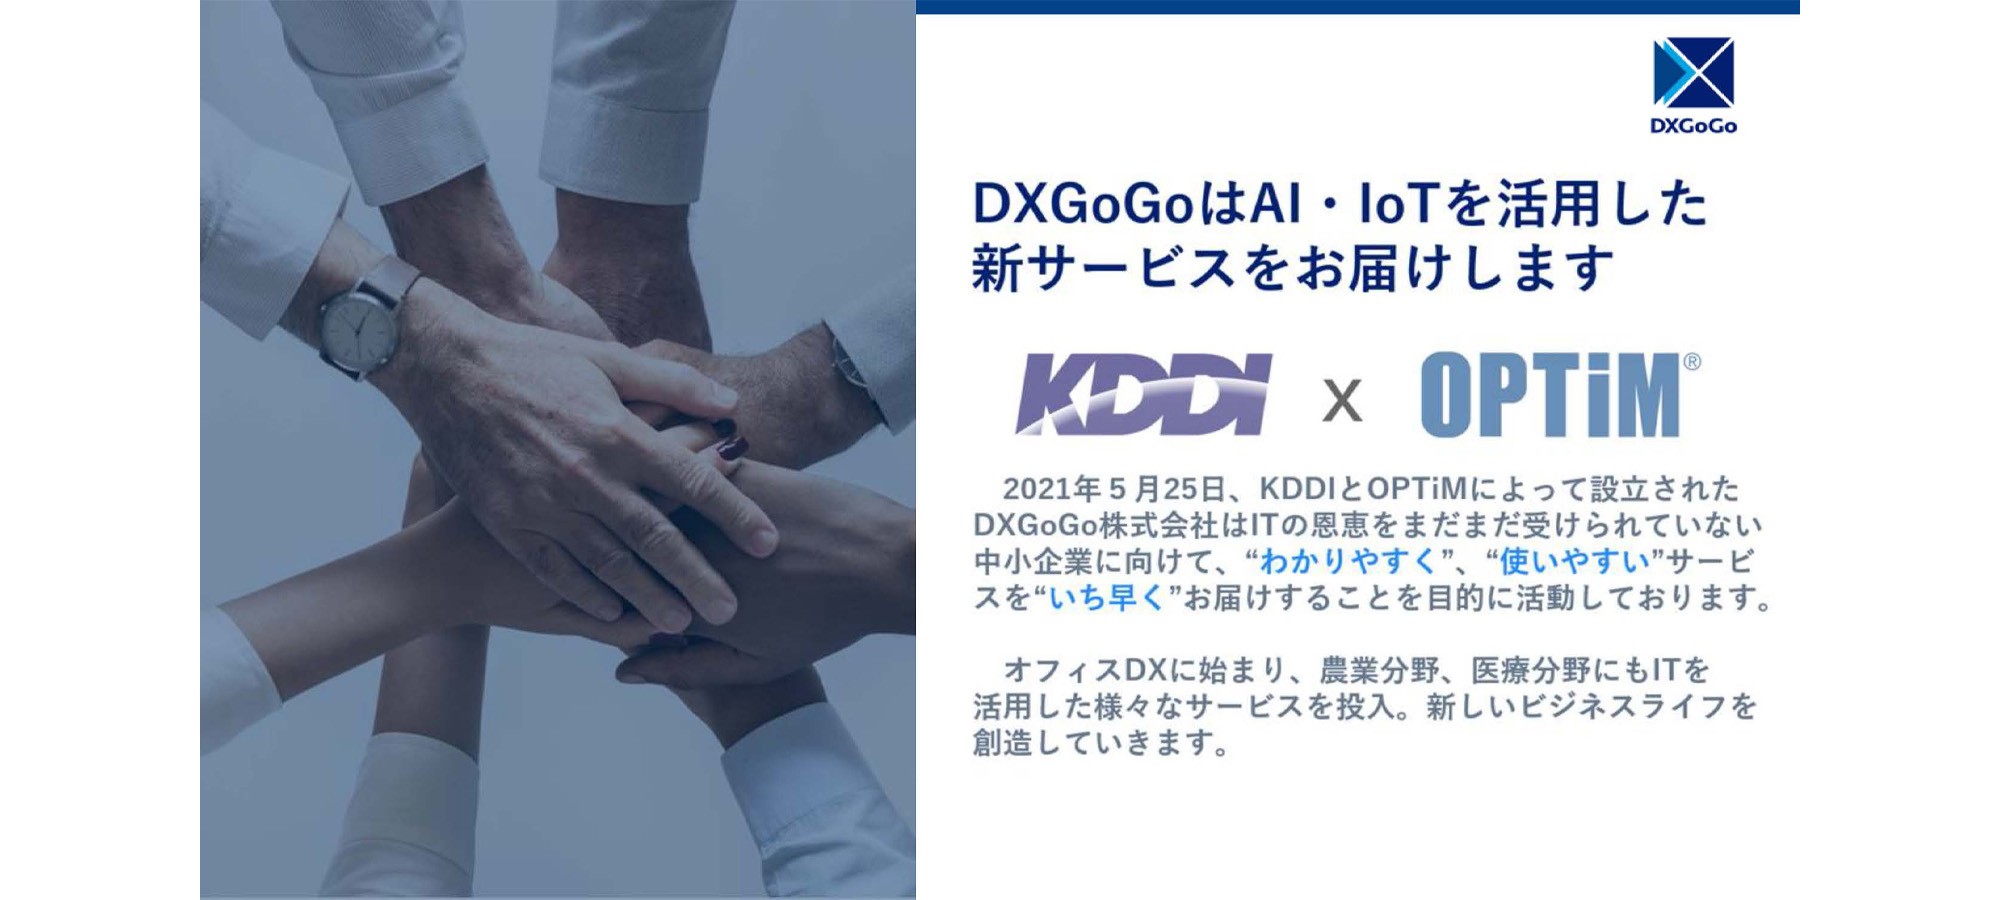 DXGoGoはAI・IoTを活用した新サービスをお届けします。 KDDI × OPTiM、2021年5月25日、 KDDIとOPTiMによって設立されたDXGoGo株式会社はITの恩恵をまだまだ受けられていない中小企業に向けて、 “わかりやすく”、“使いやすい” サービスを “いち早く”お届けすることを目的に活動しております。オフィスDXに始まり、 農業分野、 医療分野にもITを活用した様々なサービスを投入。 新しいビジネスライフを創造していきます。